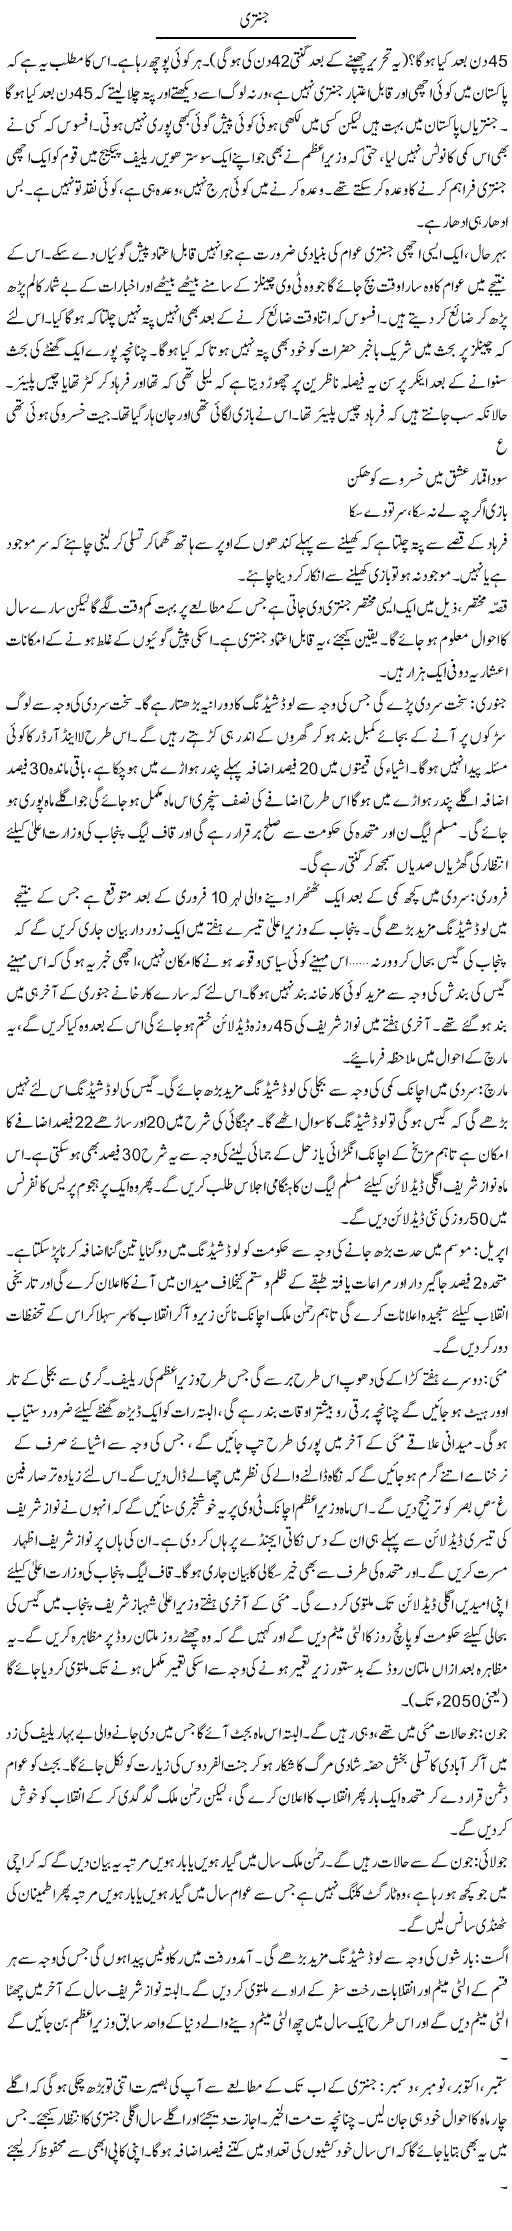 45 Days Express Column Abdullah Tariq 12 January 2011